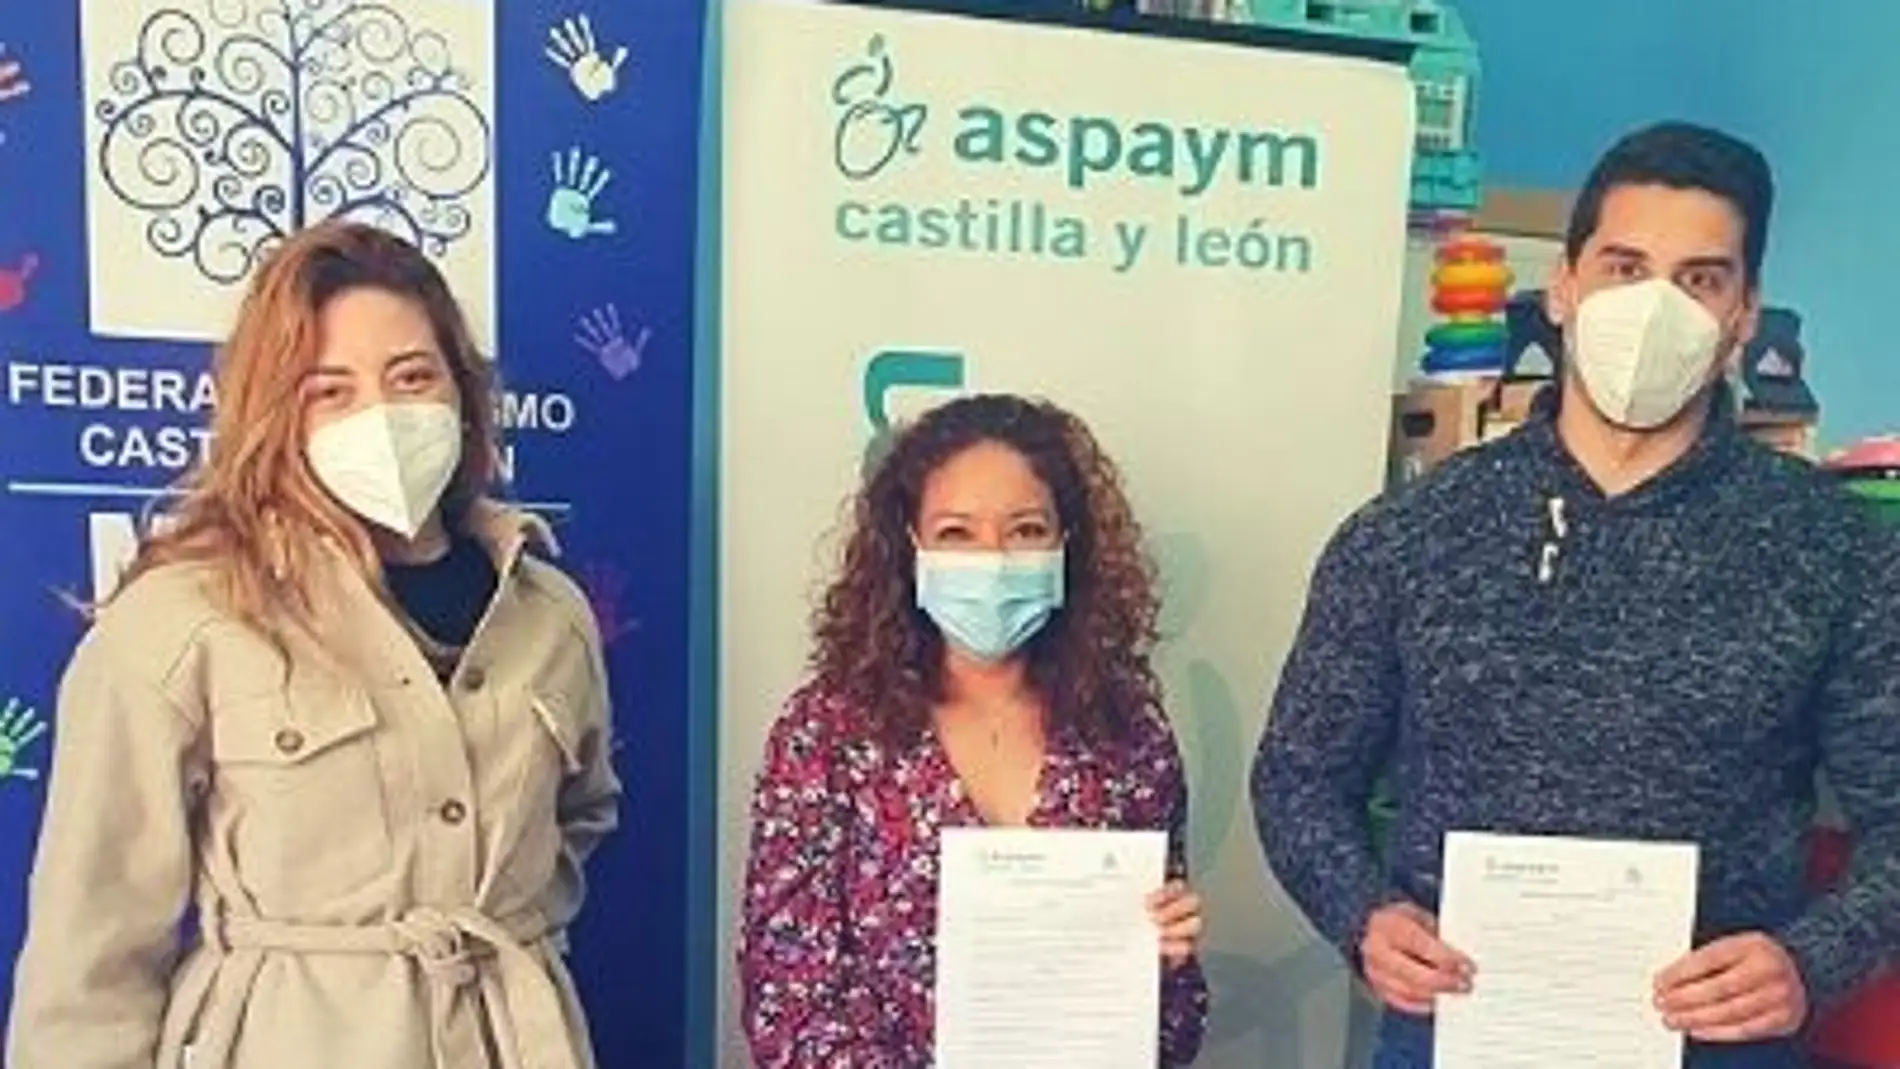 ASPAYM Castilla y León y Mundo Azul Palencia, unidos por la discapacidad